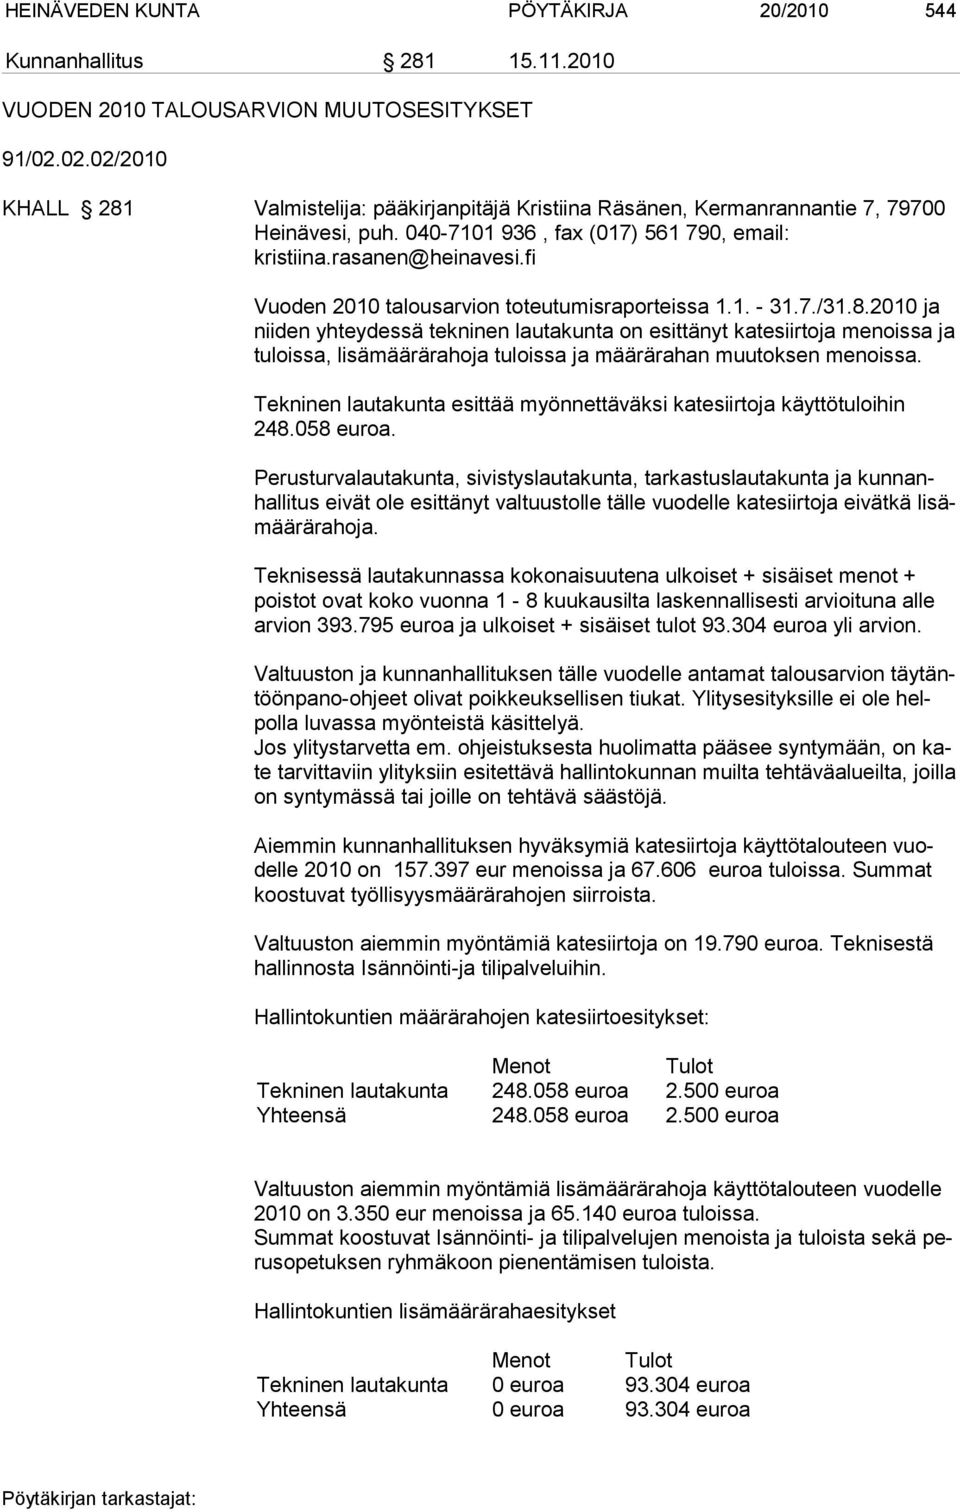 fi Vuoden 2010 talousarvion toteutumisraporteissa 1.1. - 31.7./31.8.